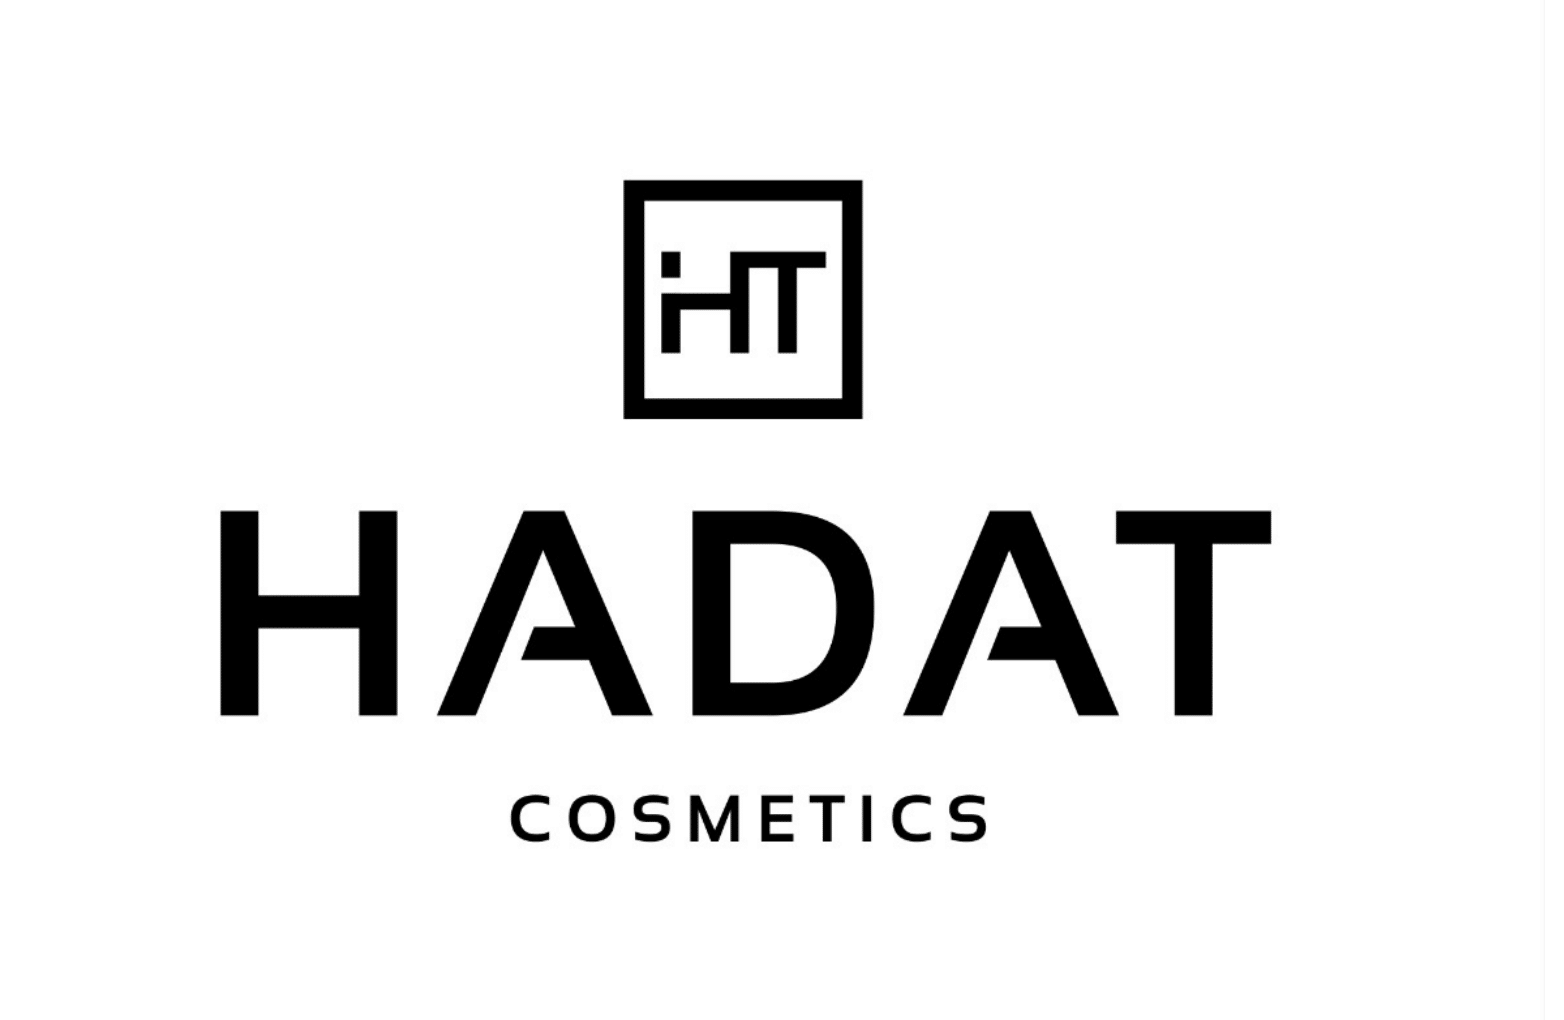 HADAT Cosmetics